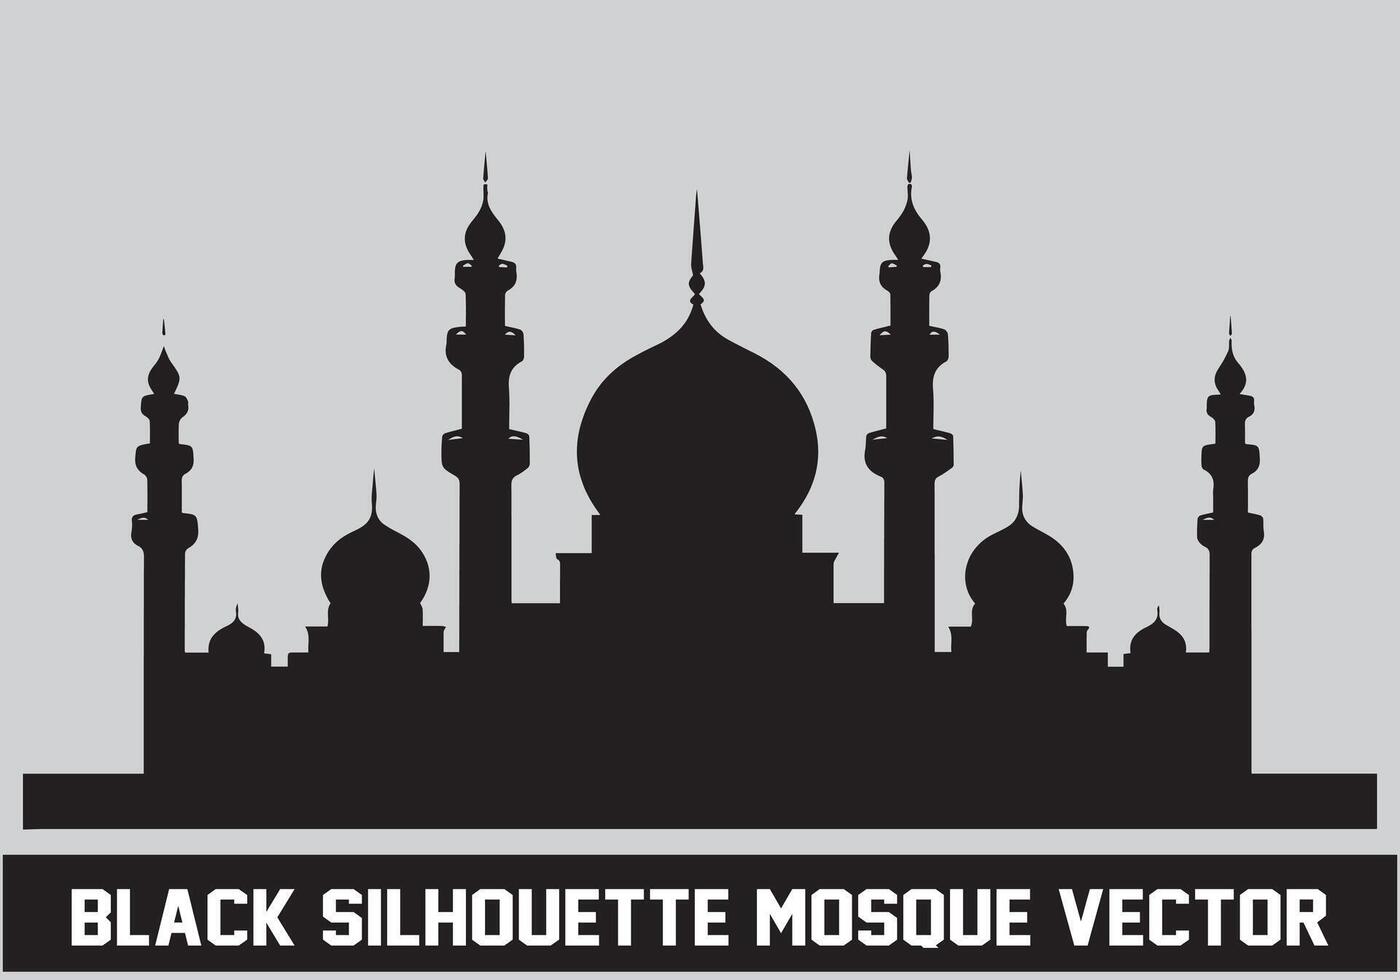 moschea nero silhouette icona illustrazione per islamico elemento vettore